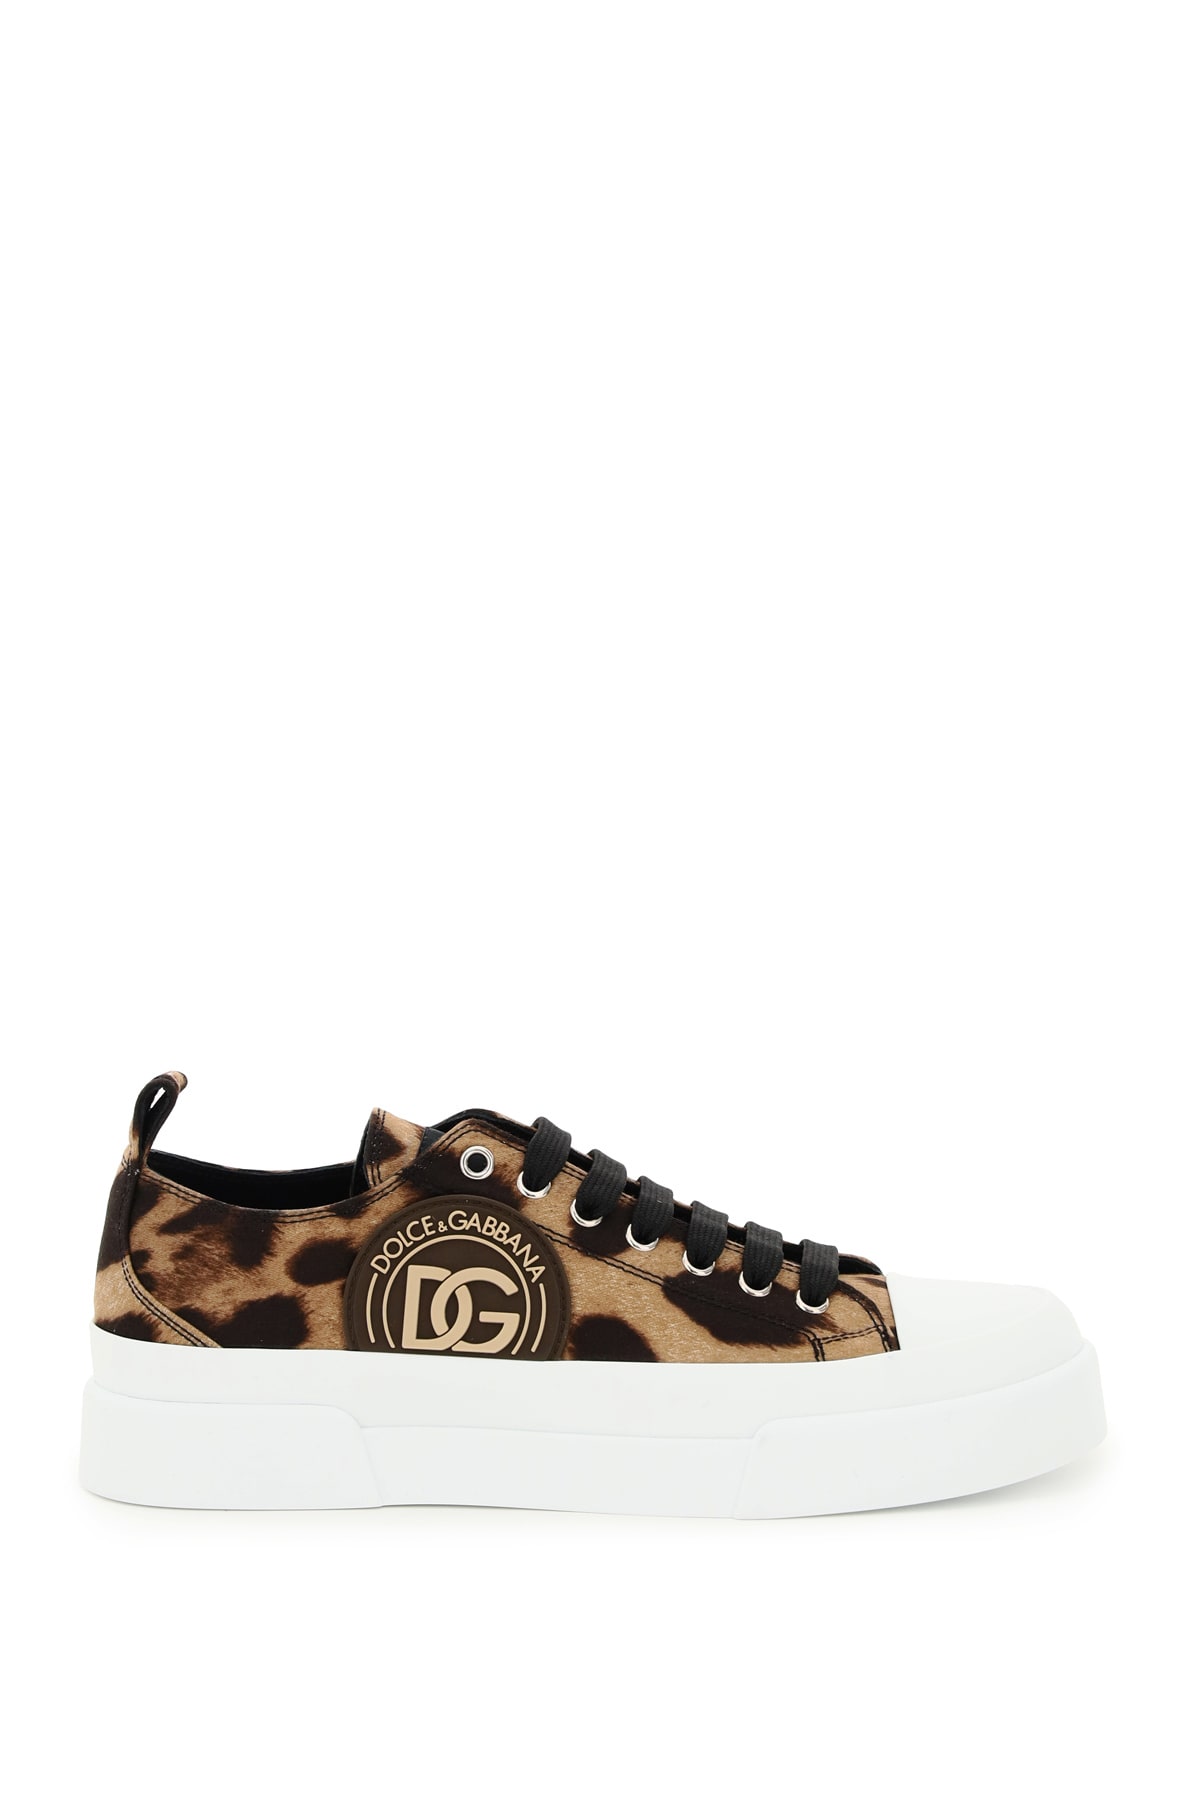 Dolce & Gabbana Portofino Sneakers With Leopard Print